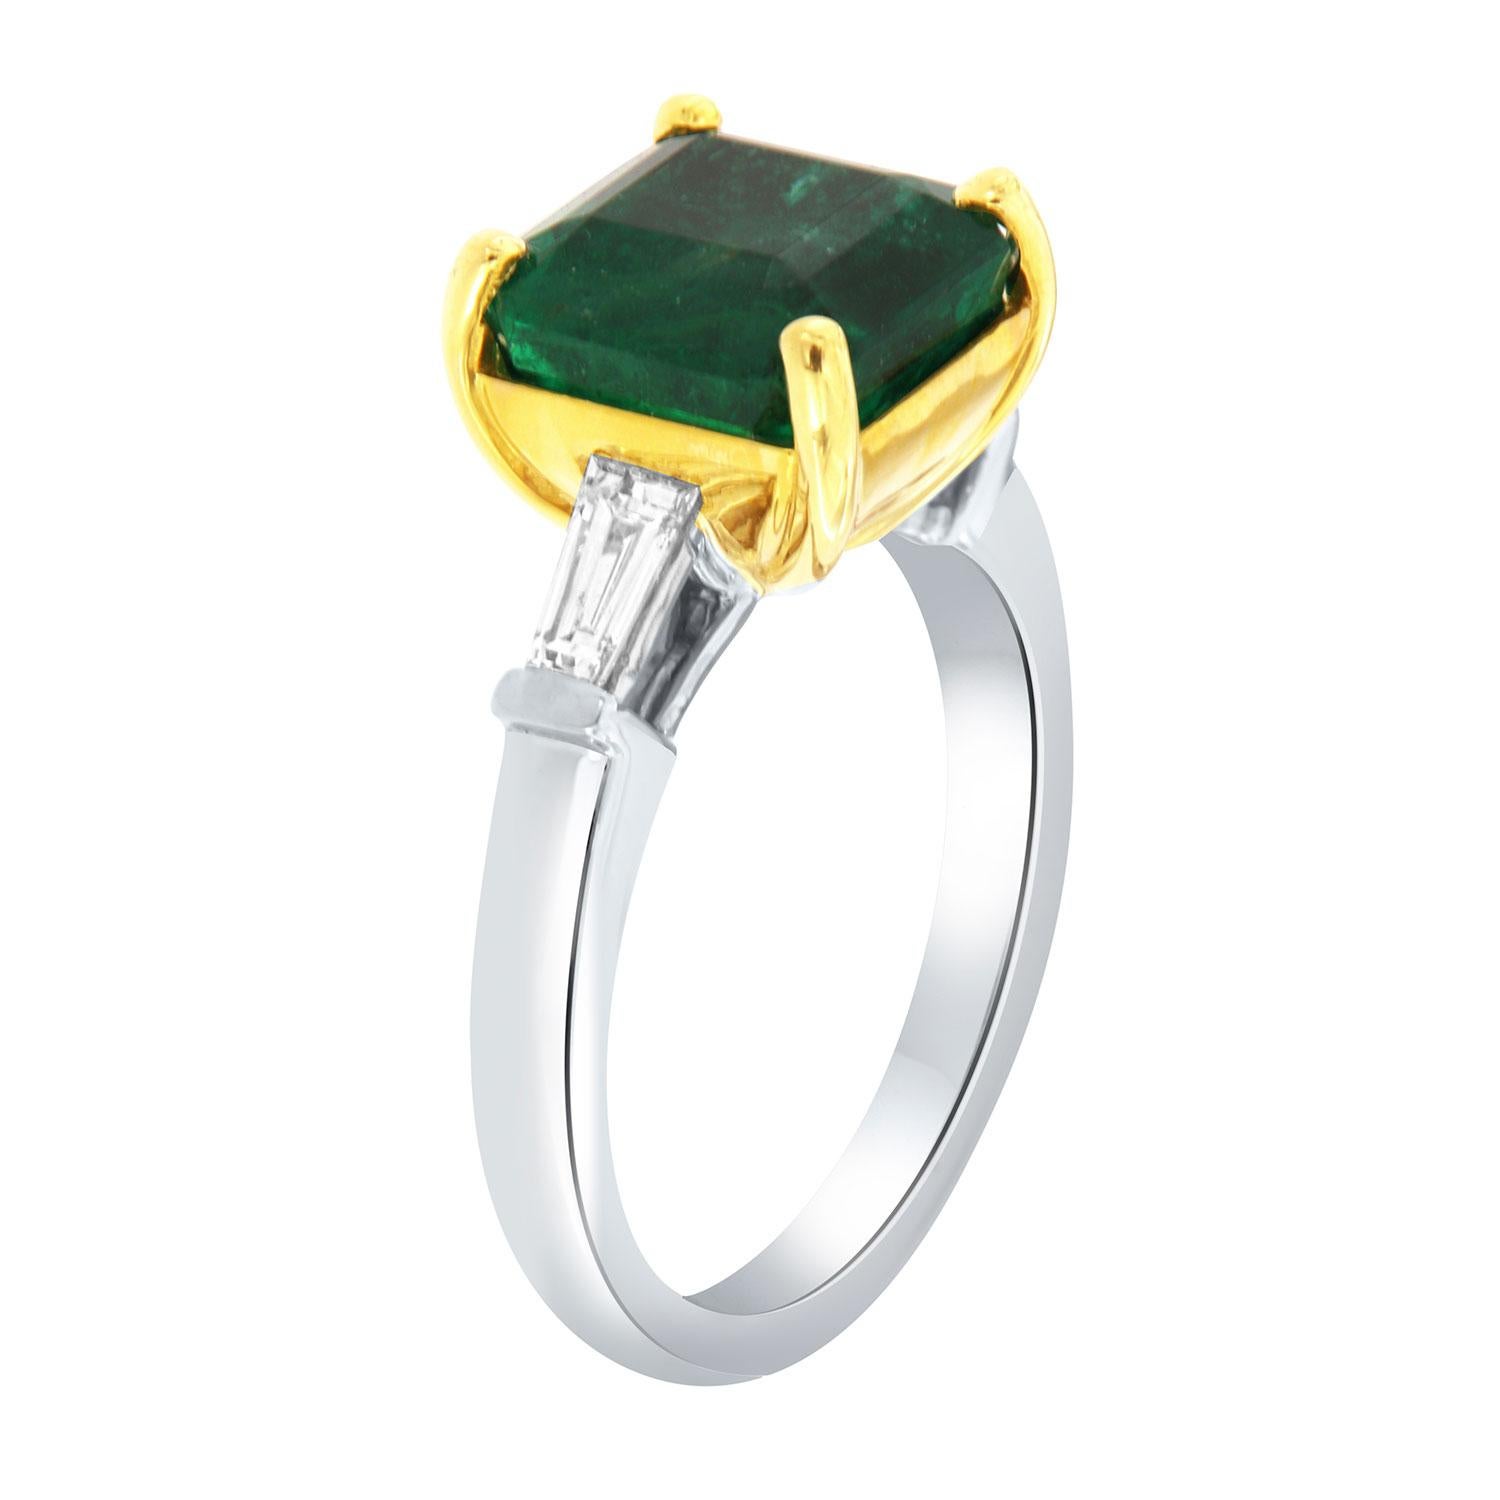 Dieser klassische Ring aus Platin und 18 Karat Gelbgold verfügt über einen 4,55 Karat Asscher-Schliff geformt lebendige grüne natürliche Smaragd flankiert von zwei (2) Baguette-förmigen Diamanten in einem Gesamtgewicht von 0,34 Karat auf einem 2,8